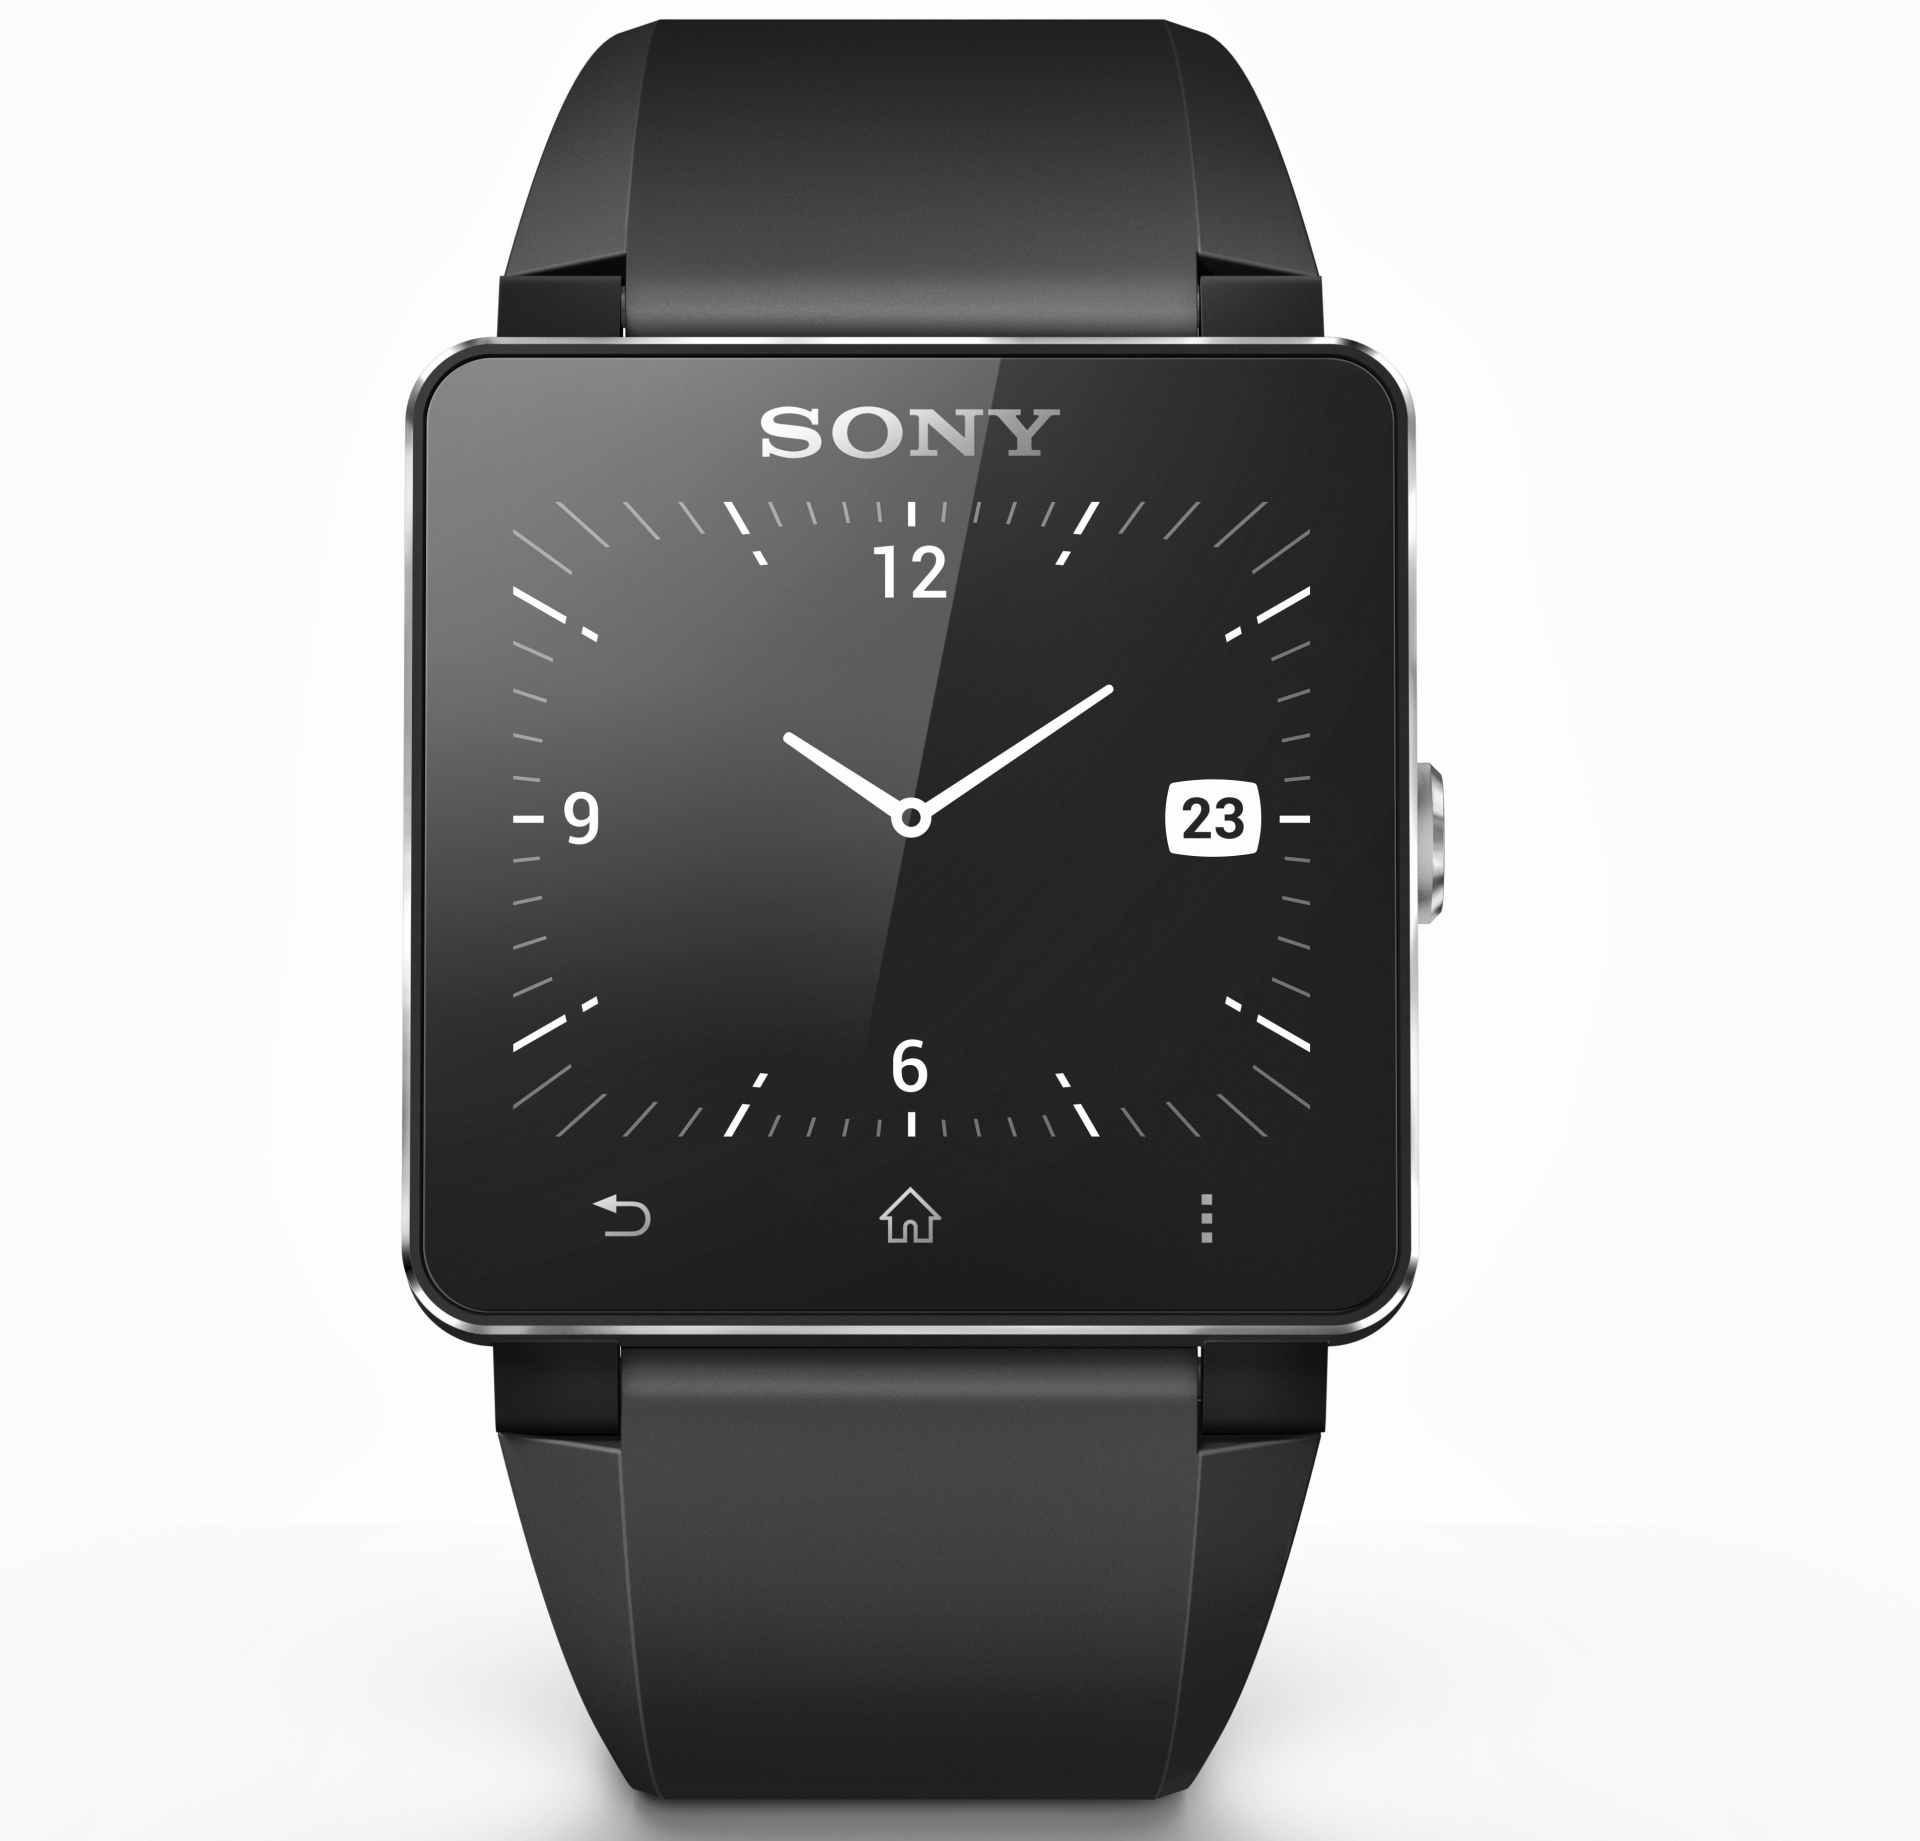 Sony trình làng đồng hồ thông minh SmartWatch 2: Màn hình lớn hơn, chống nước, NFC, bán tháng Chín